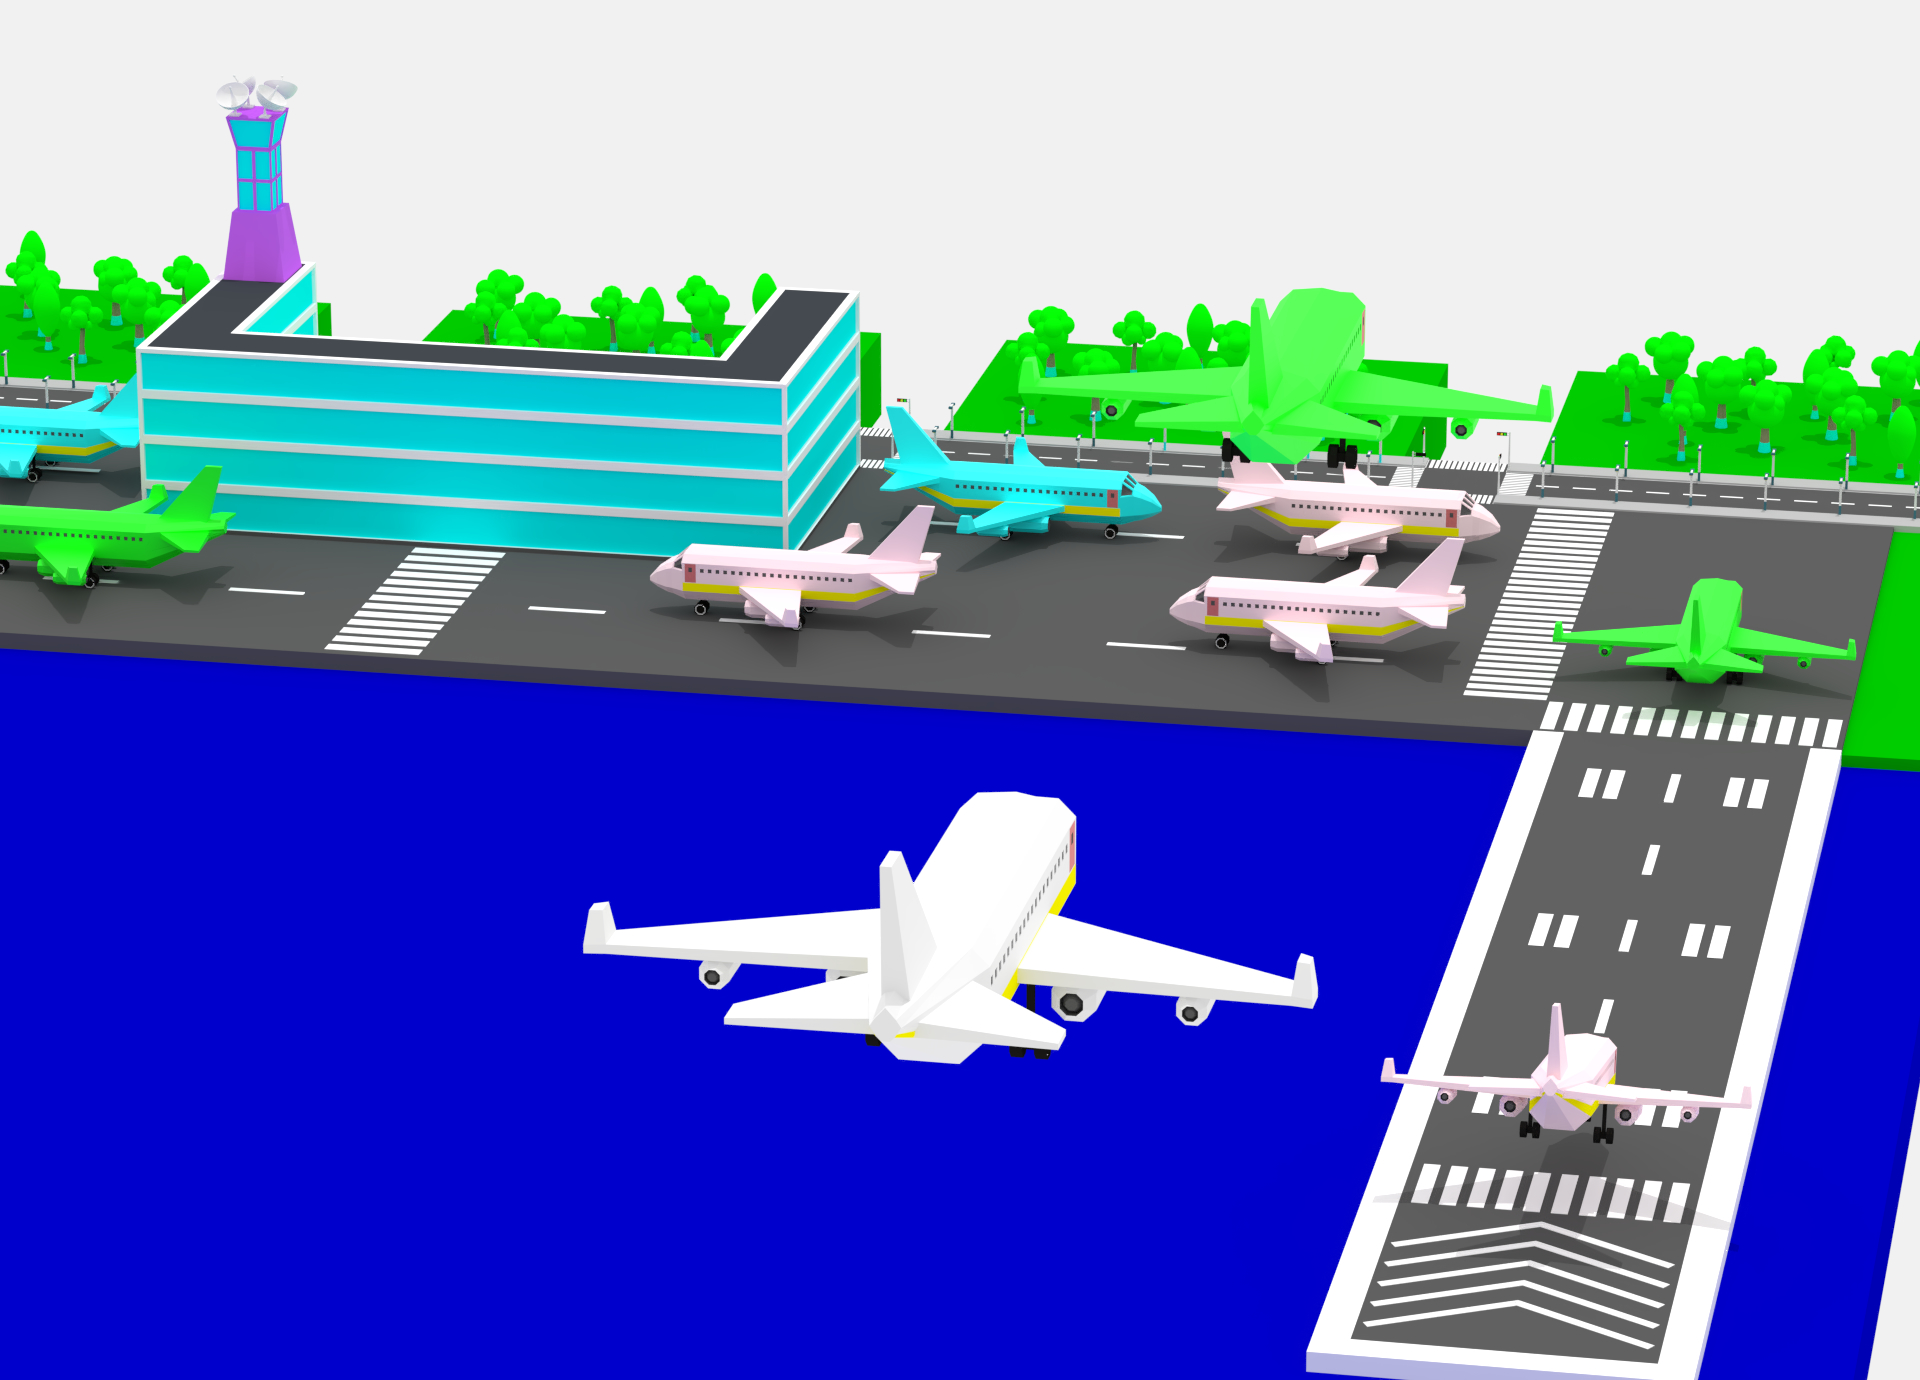 “十大创新亮点”提高通关效率！胶东机场优化通关流程打造国际一流空港口岸-半岛网